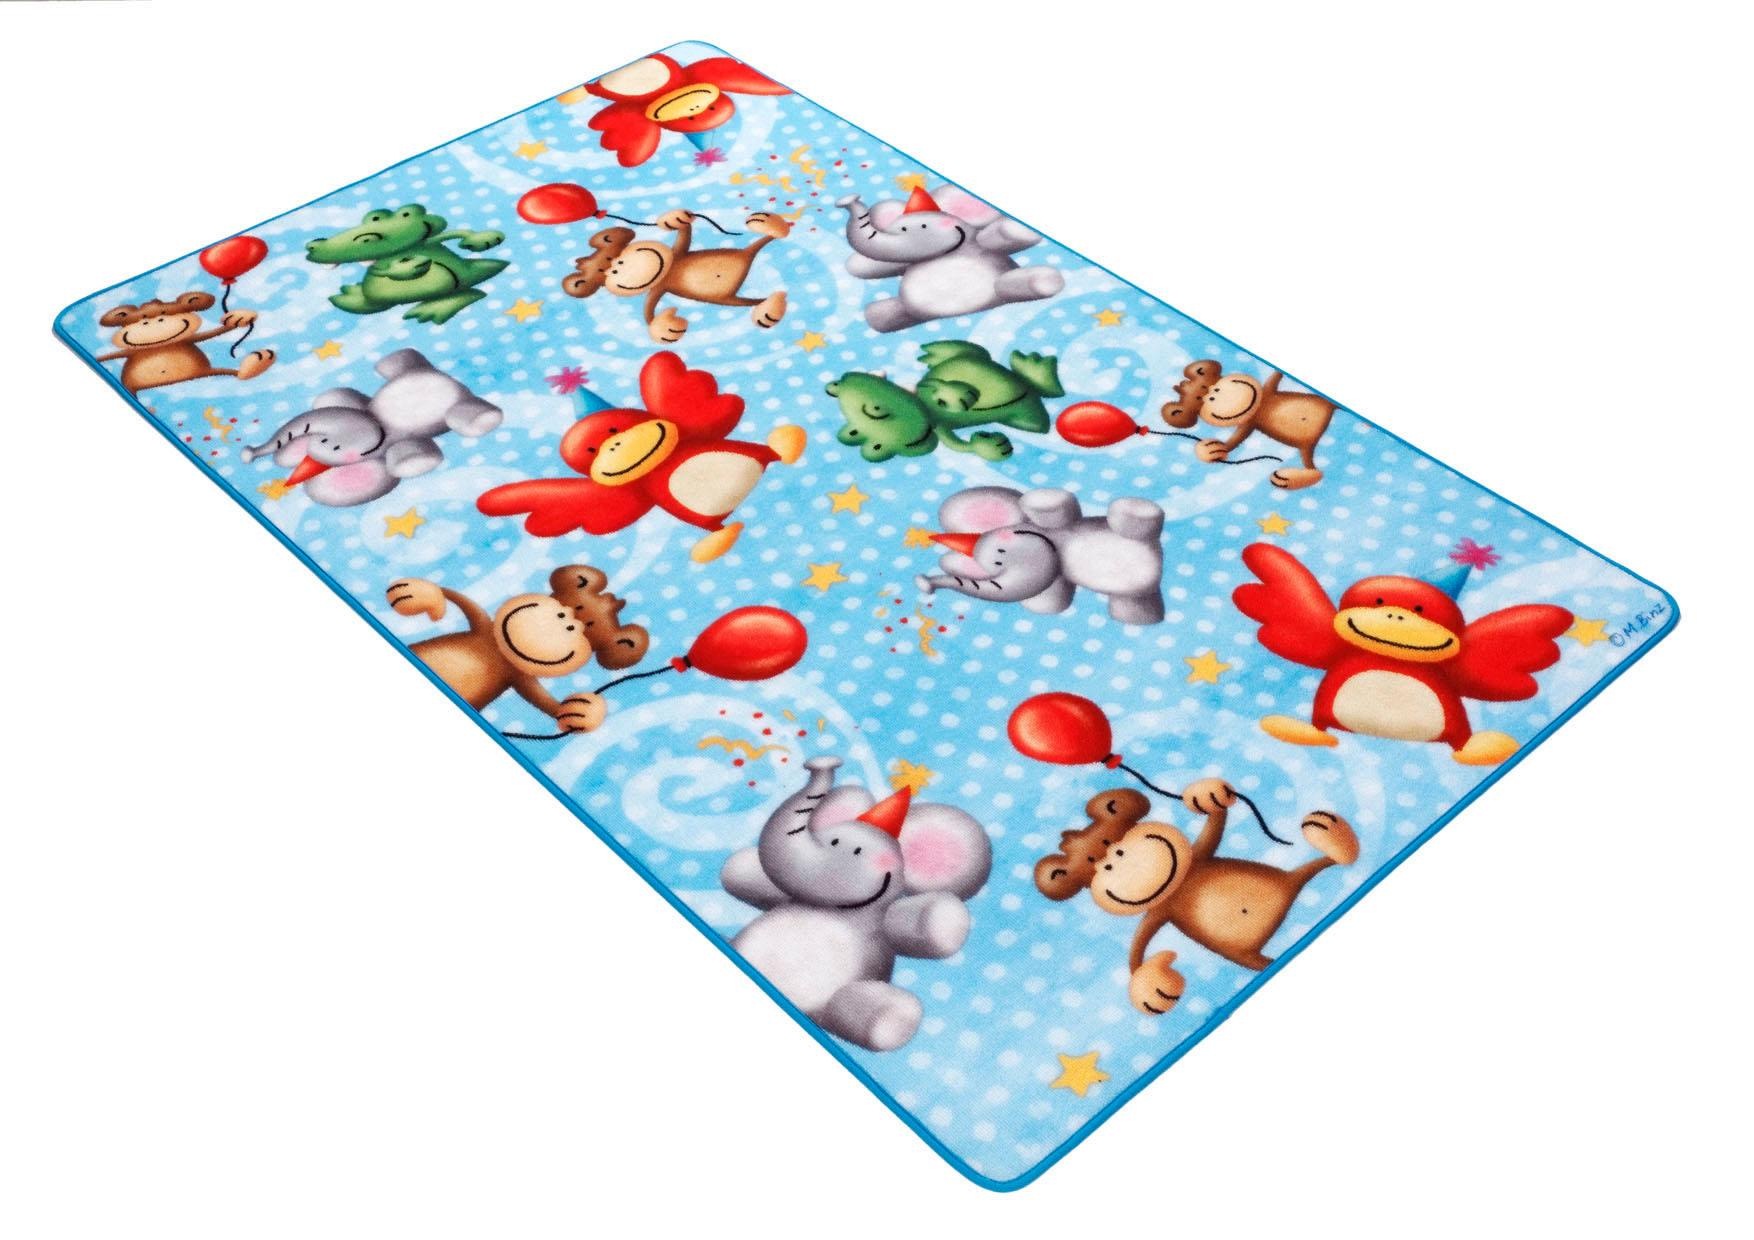 Böing Carpet Kinderteppich »Lovely Kids LK-4 Affen«, rechteckig, Motiv  Zootiere, Kinderzimmer